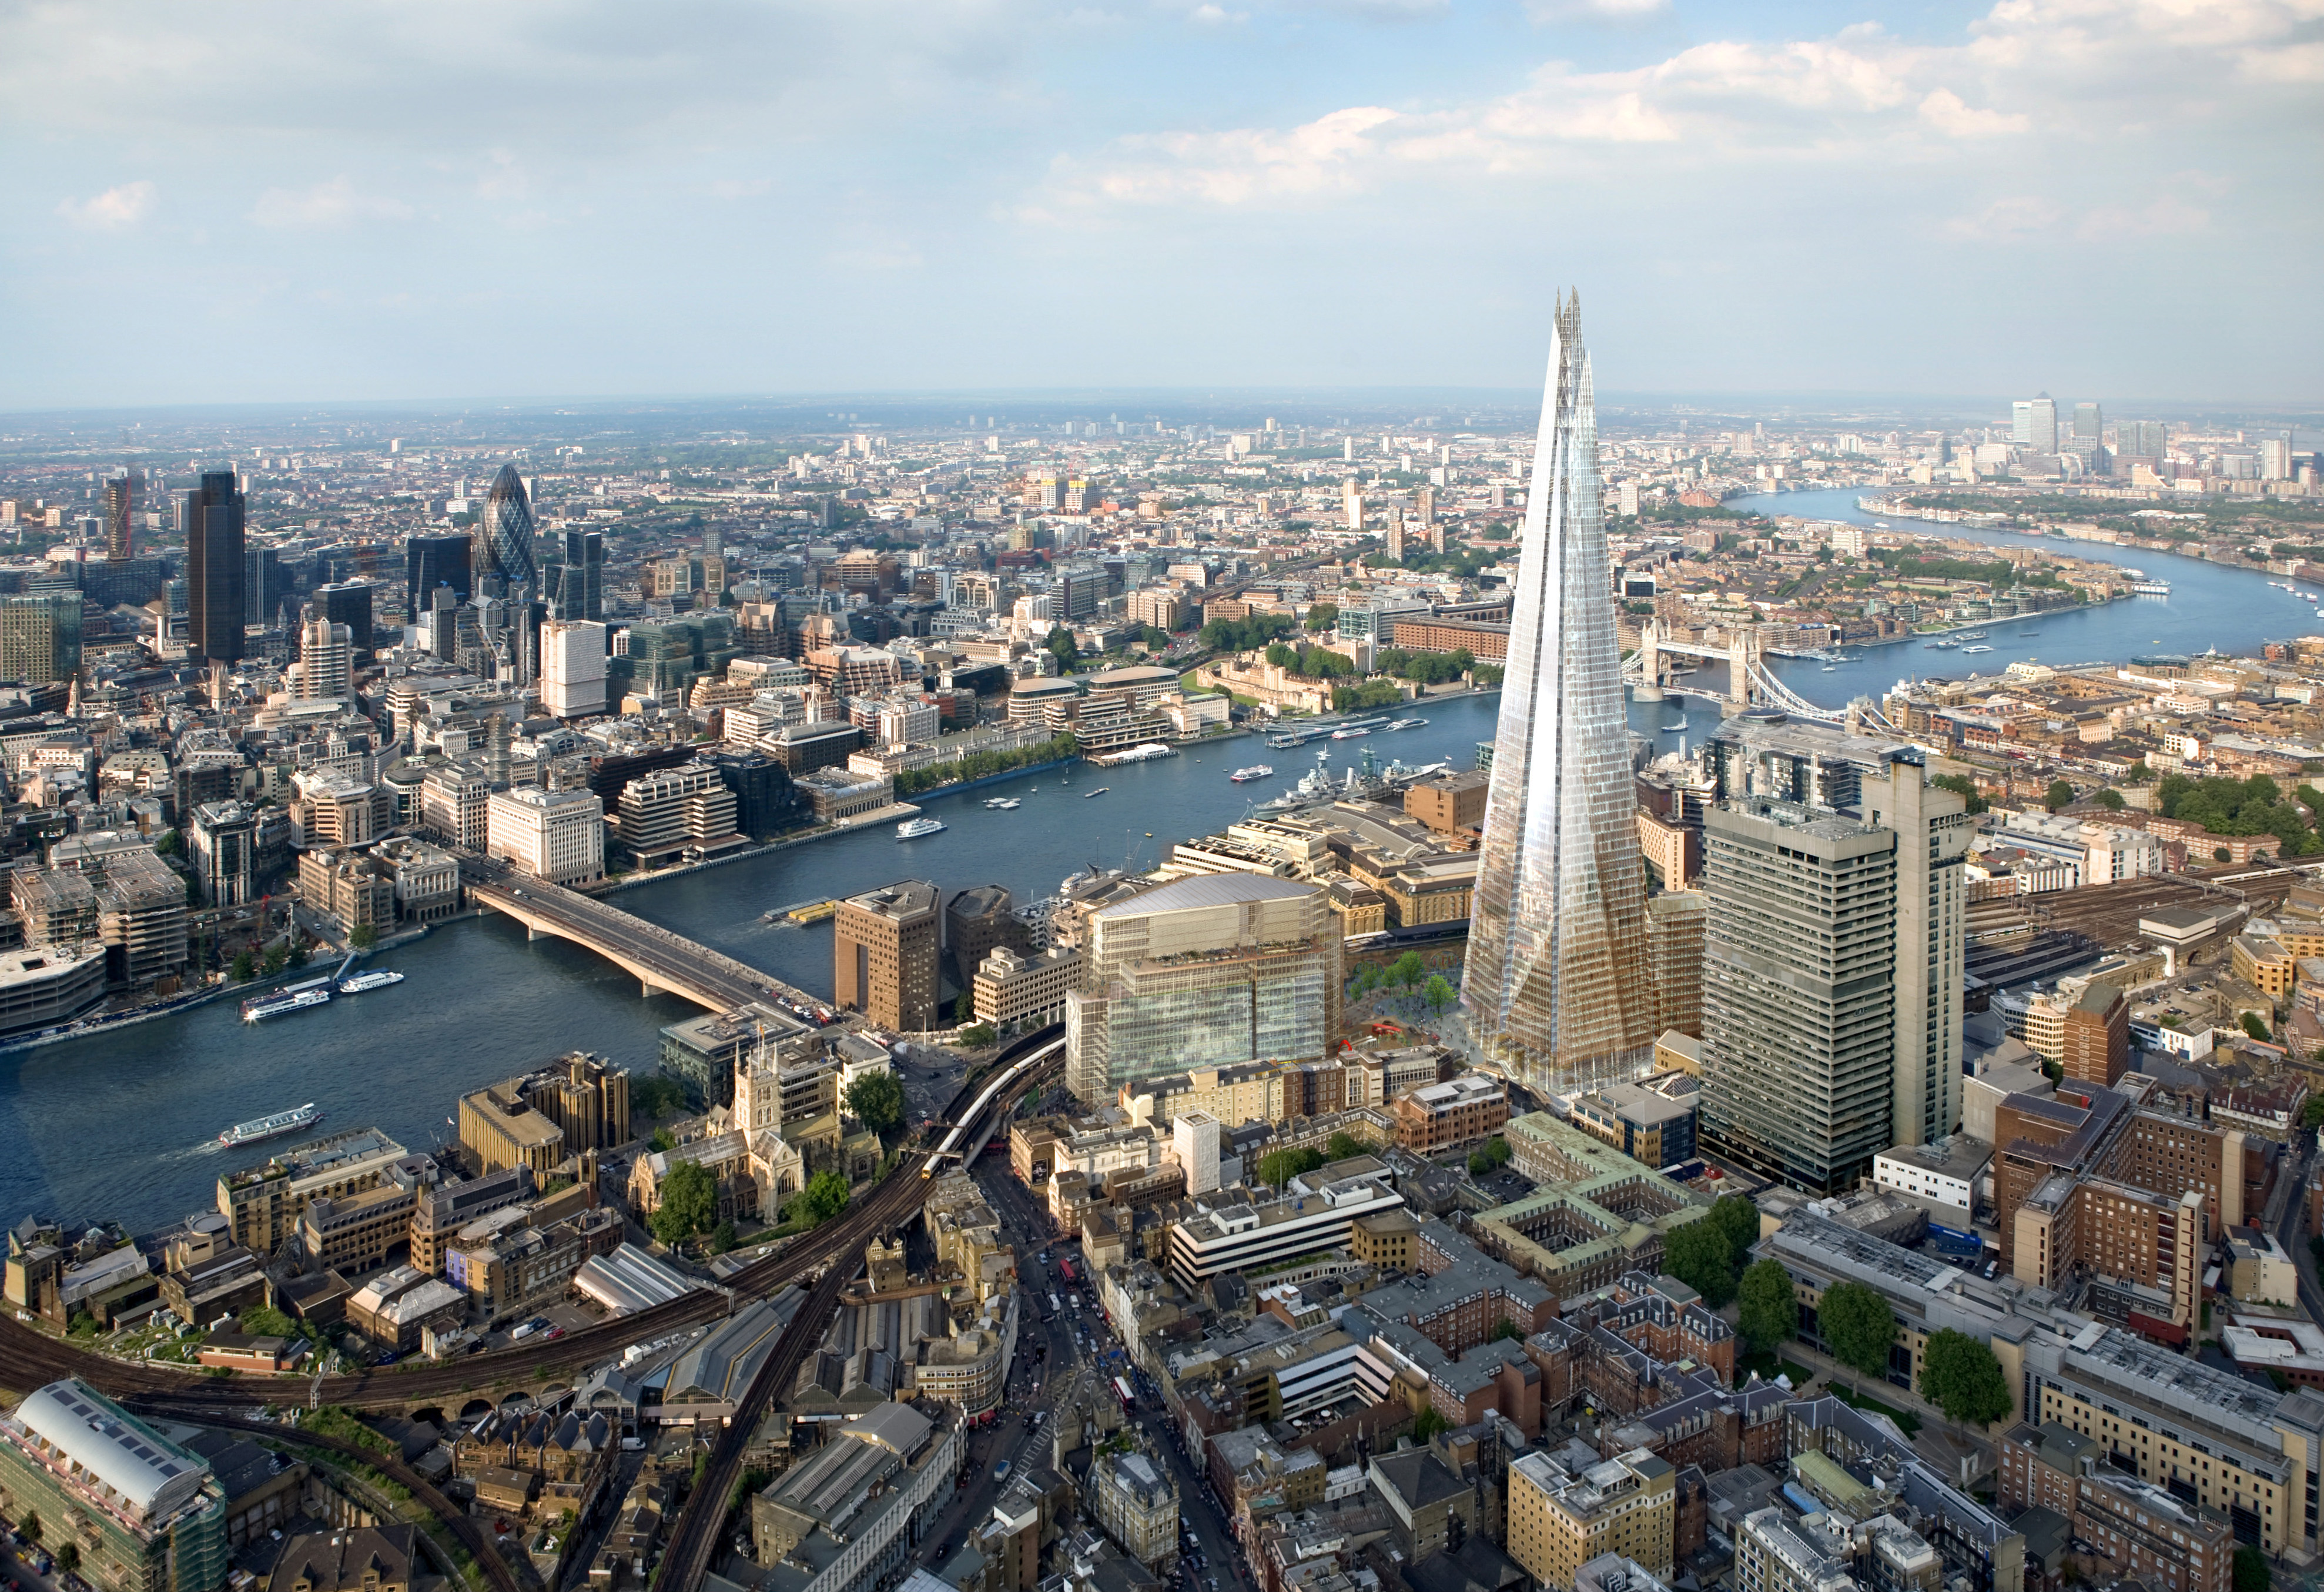 Höchster Turm Europas: Aussichtsplattform auf The Shard in London eröffnet - in 244 Metern Höhe